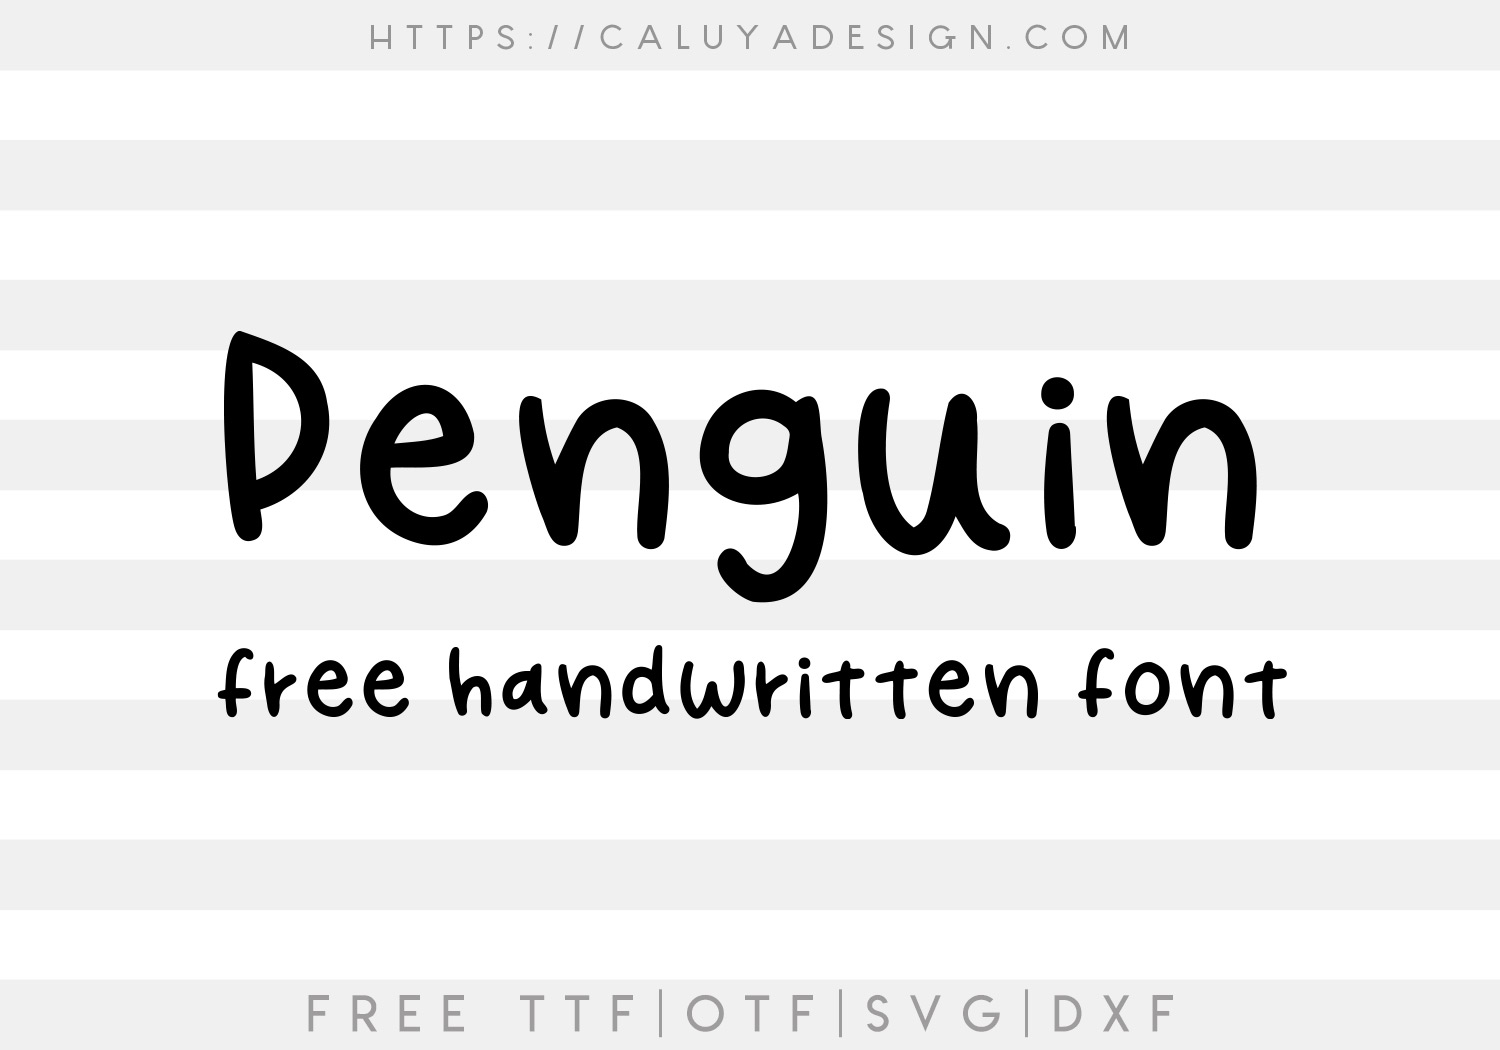 Free Penguin Font SVG